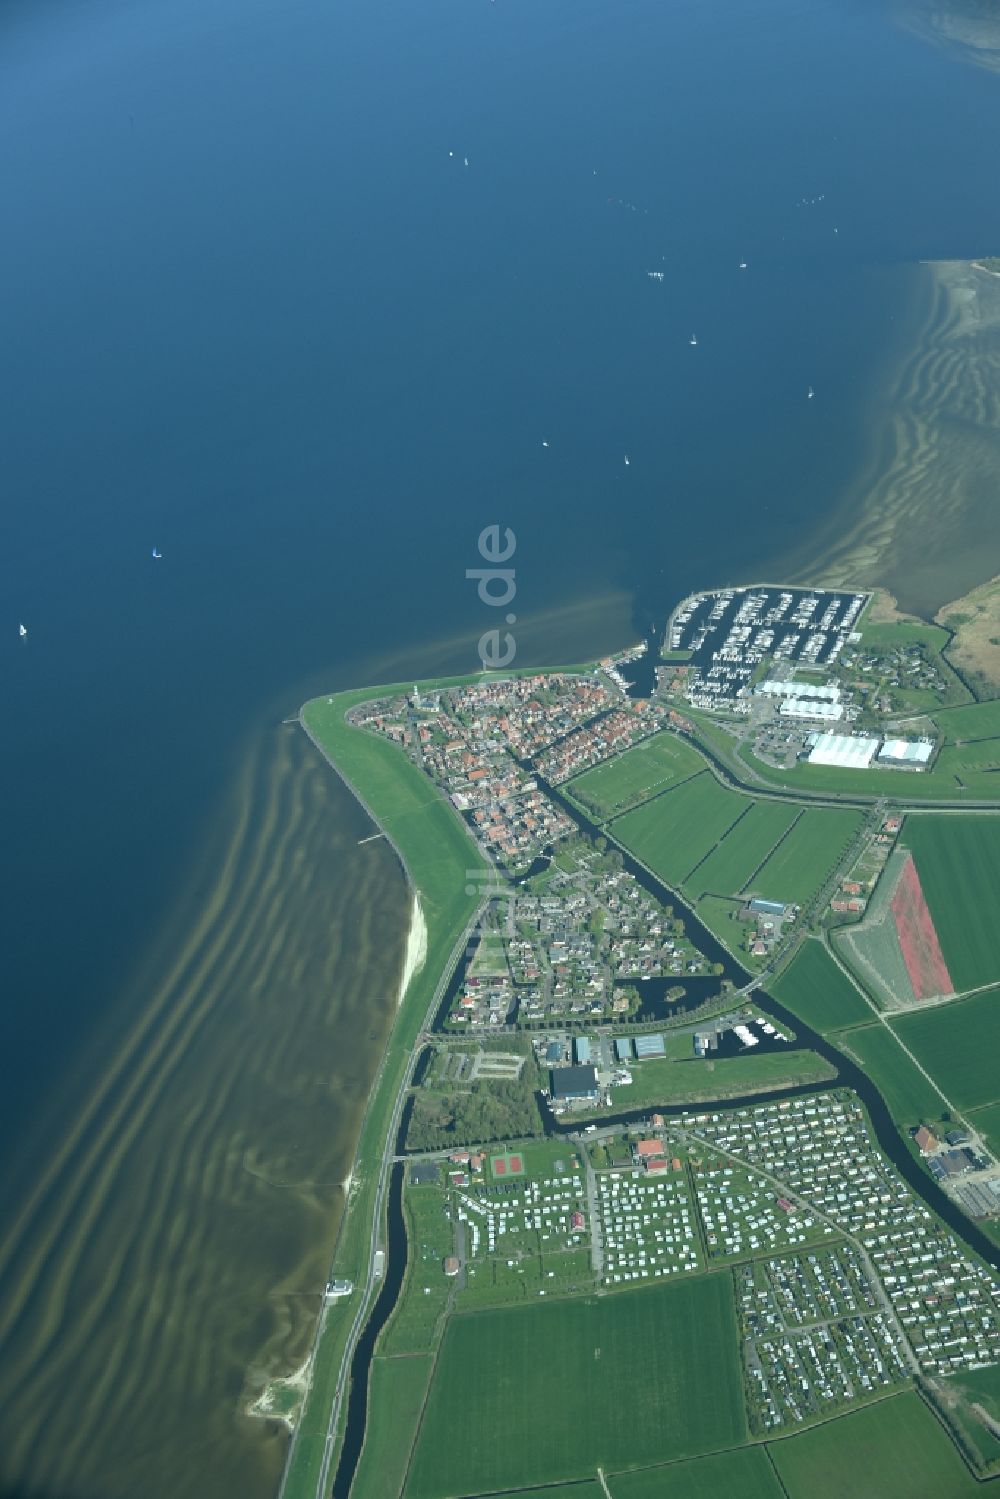 Luftbild Hindeloopen - Dorfansicht im Küstenbereich des IJsselmeeres in Hindeloopen in Friesland, Niederlande